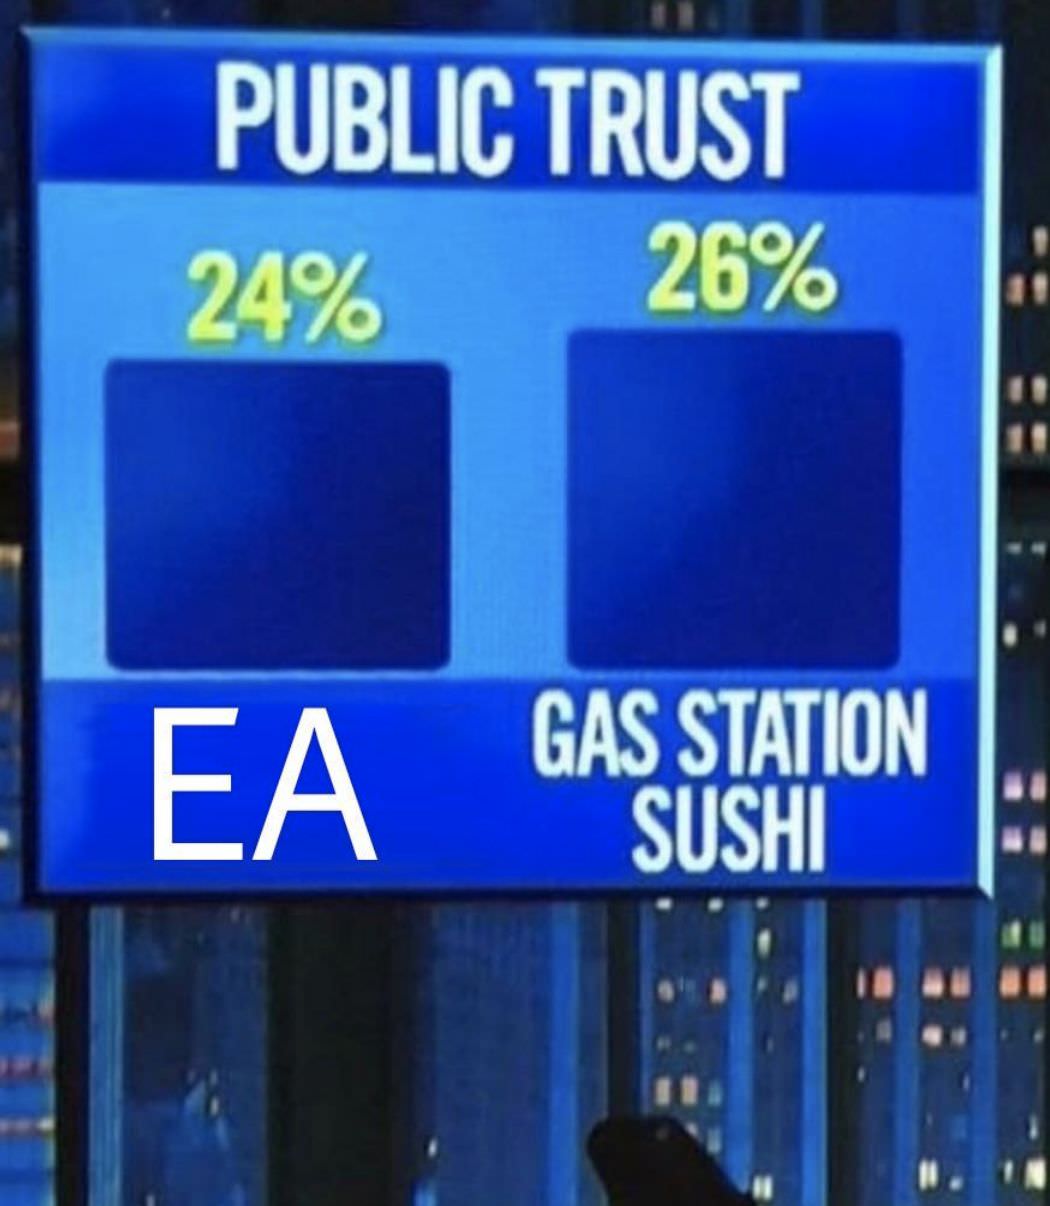 gas station sushi meme - Public Trust 24% 26% Ea Gas Station Sushi